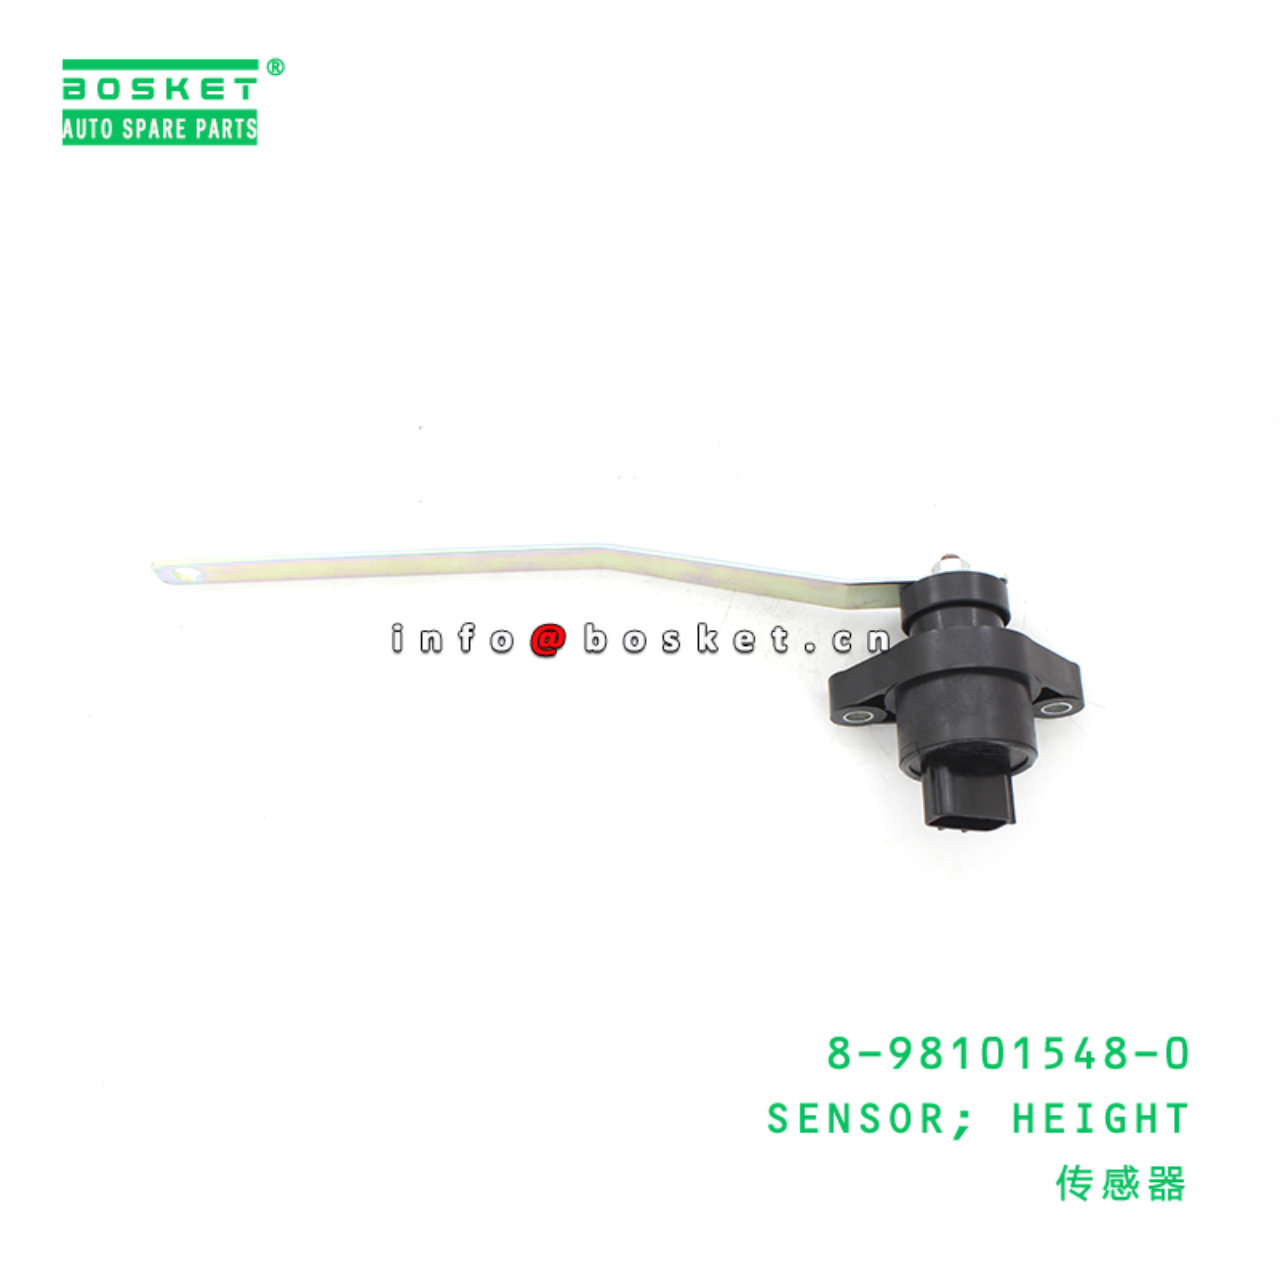 8-98101548-0 Height Sensor Suitable for ISUZU CXE CXG CYE 